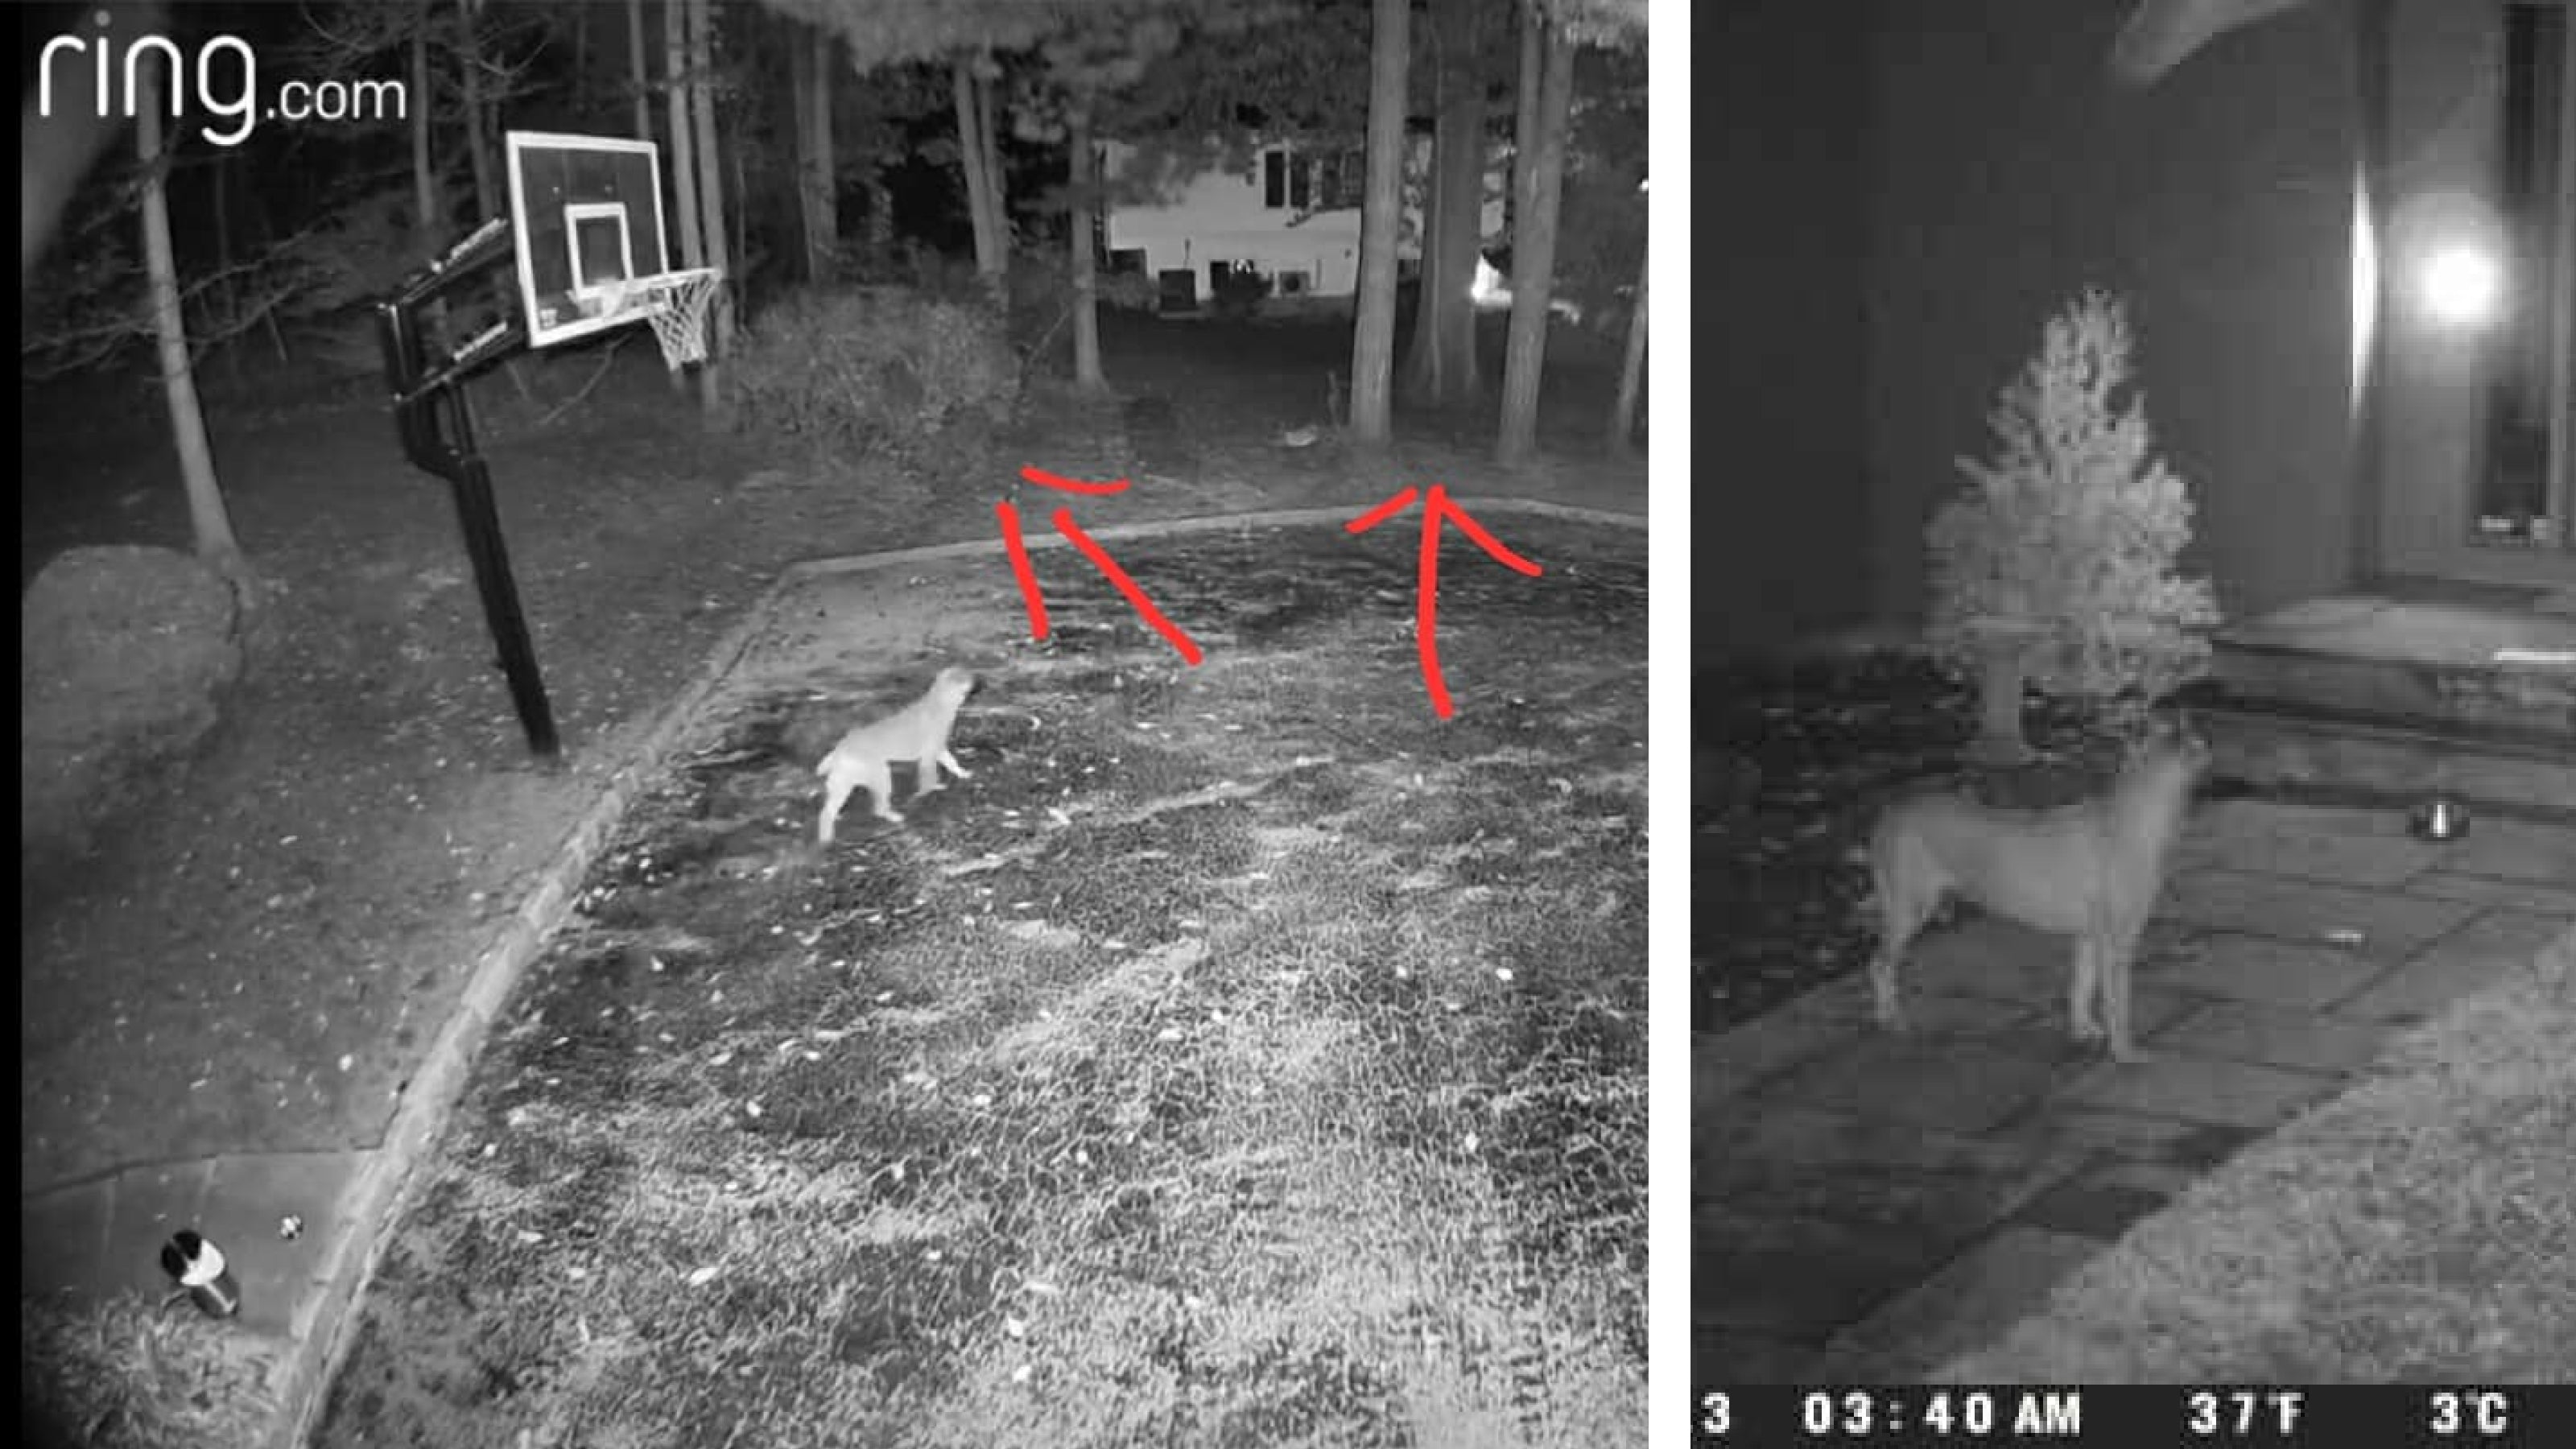 Two ring camera photos of a stray dog at night